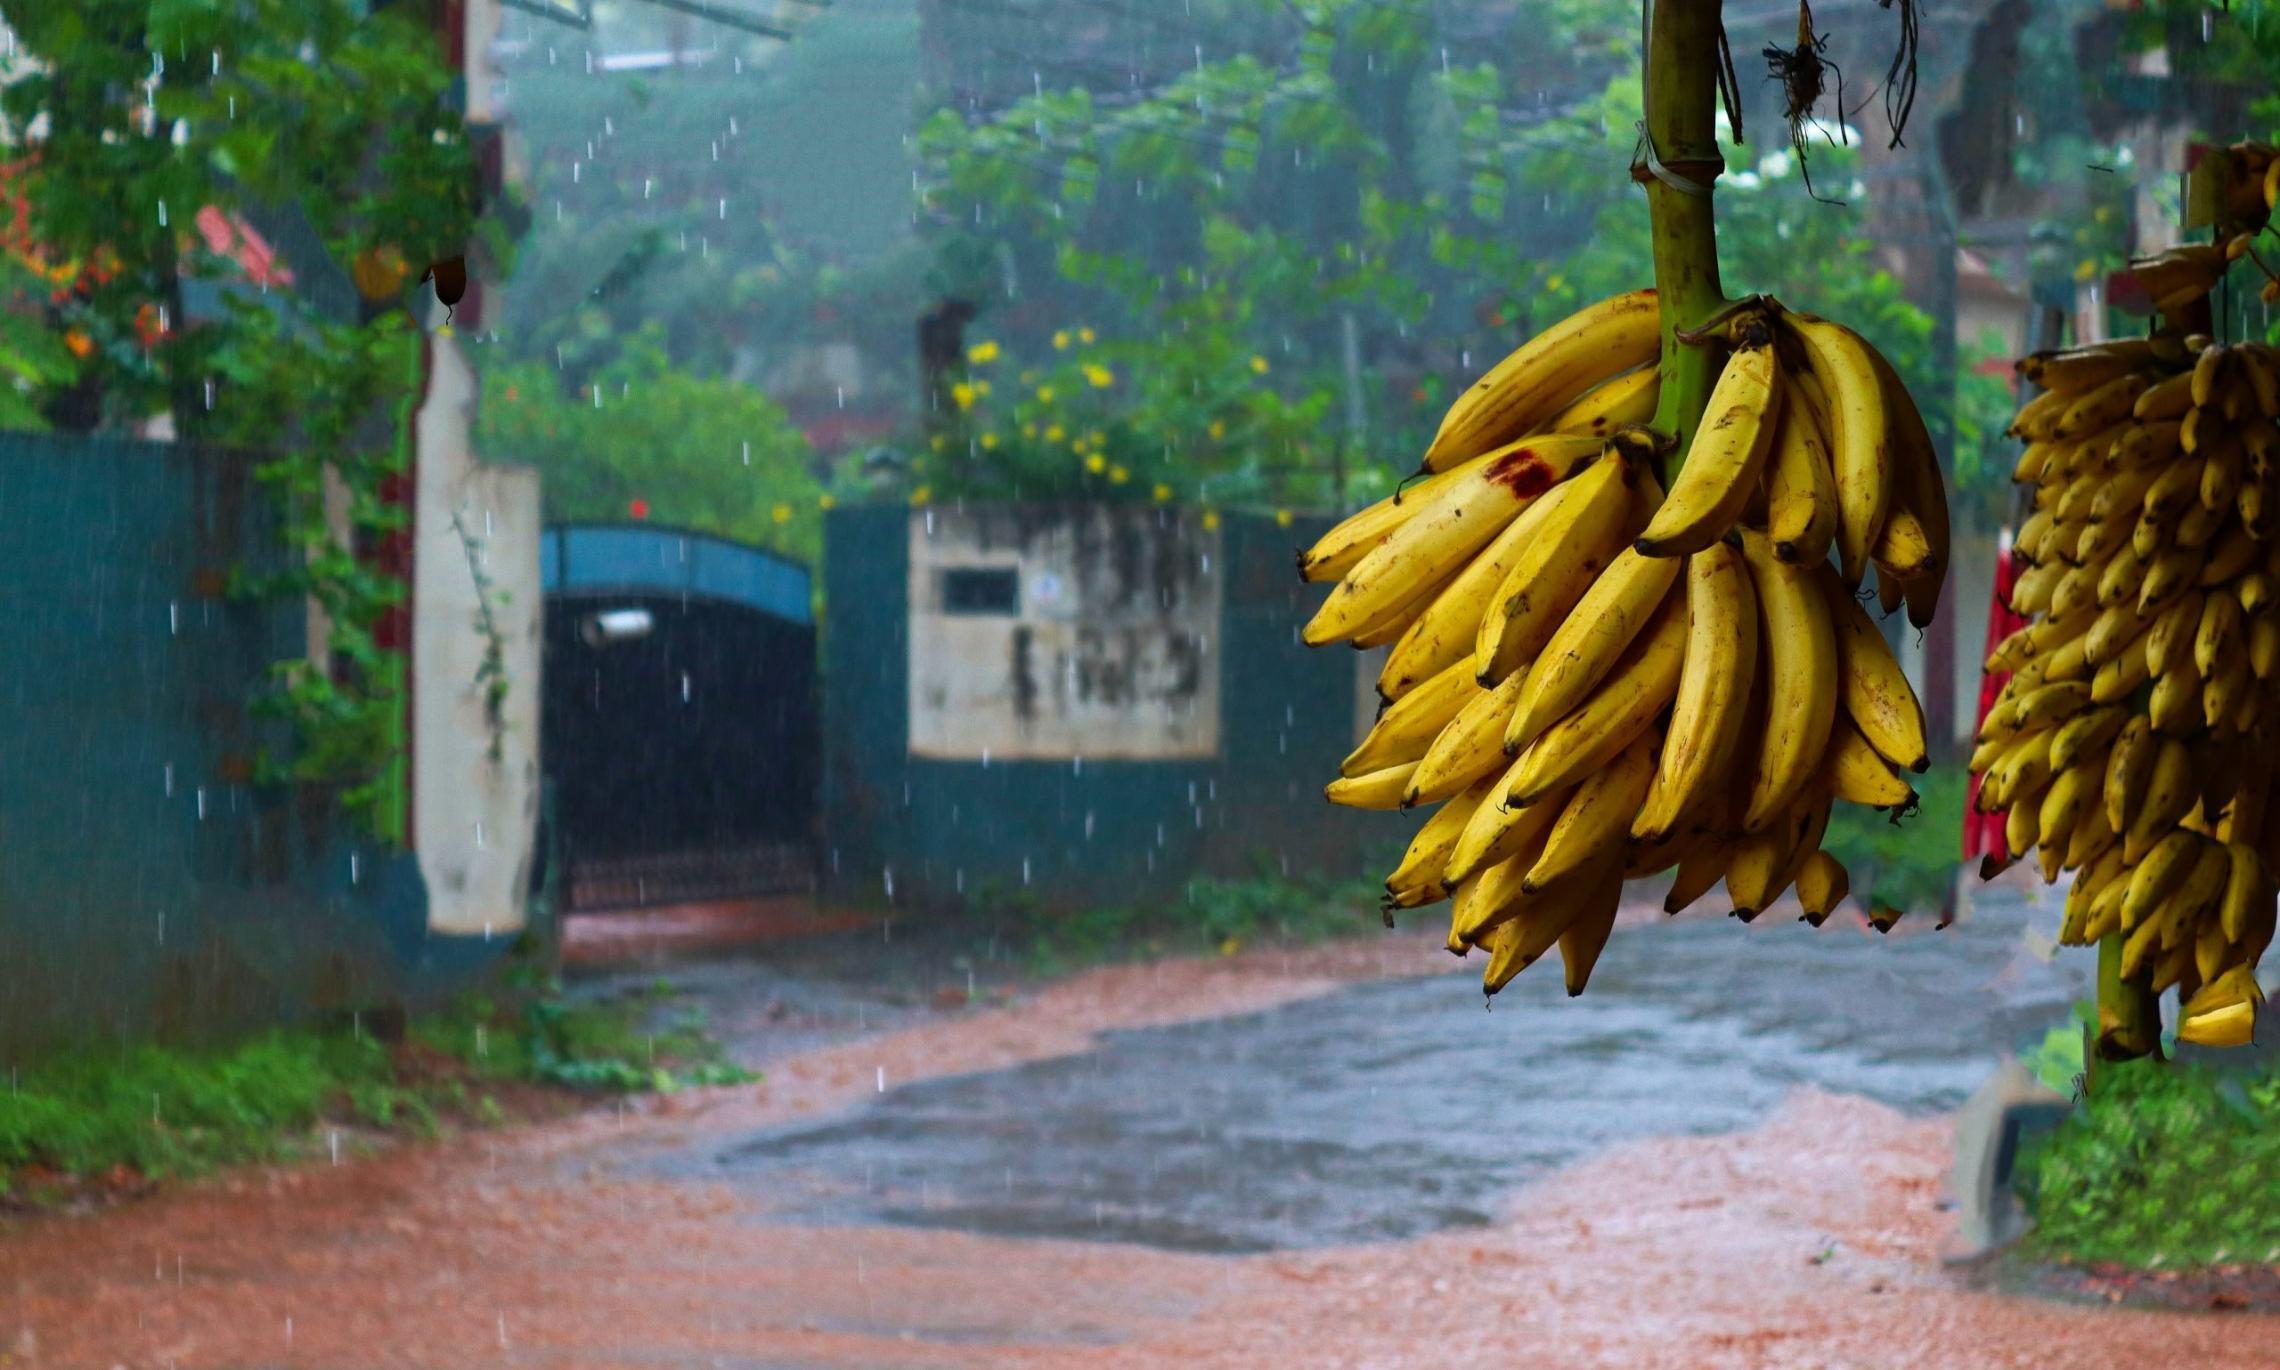 Филиппины попросили поднять цены на бананы в супермаркетах Японии.